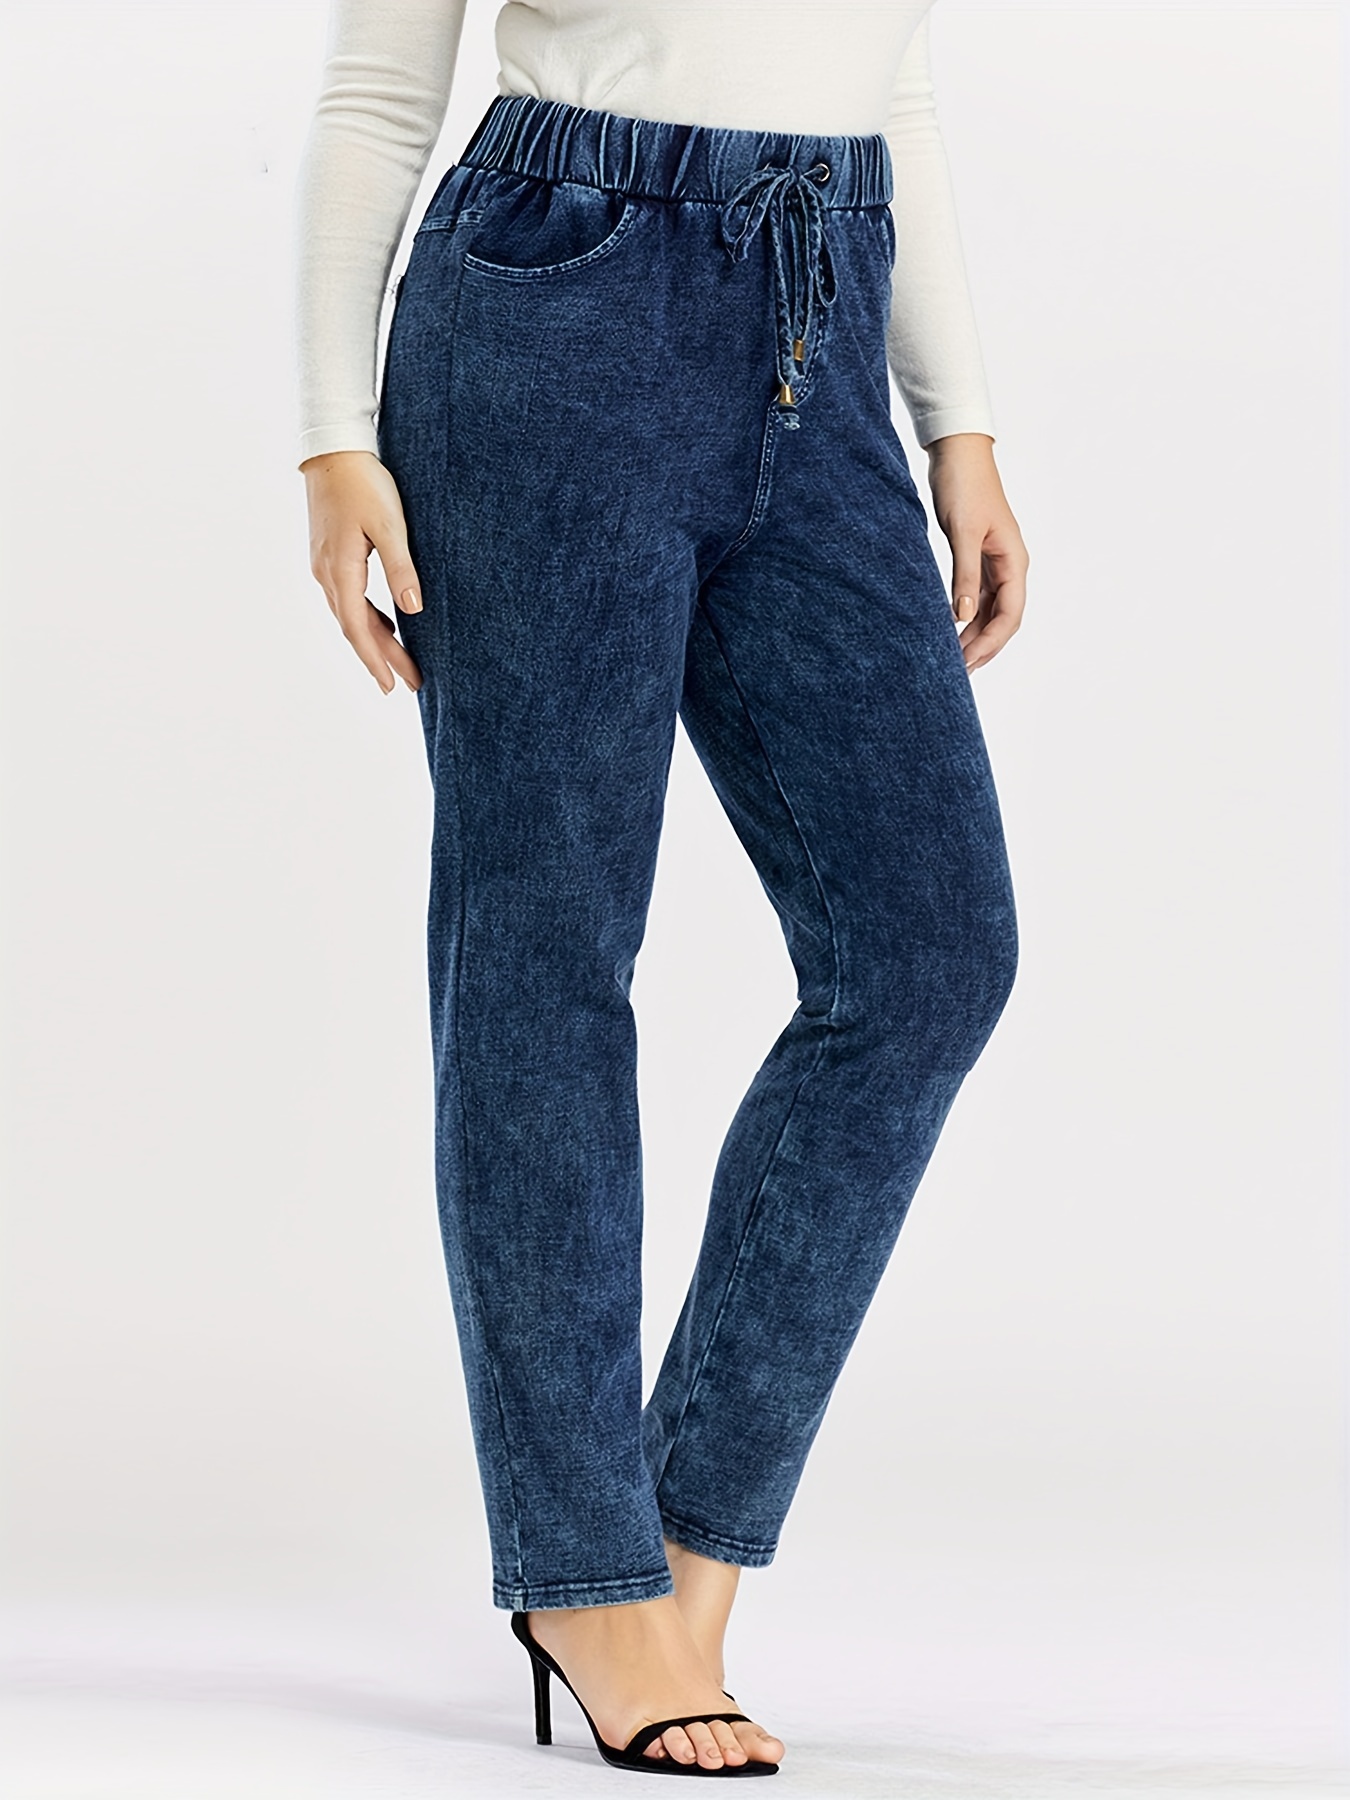 Tallas grandes - Jeans cintura elástica Mujer